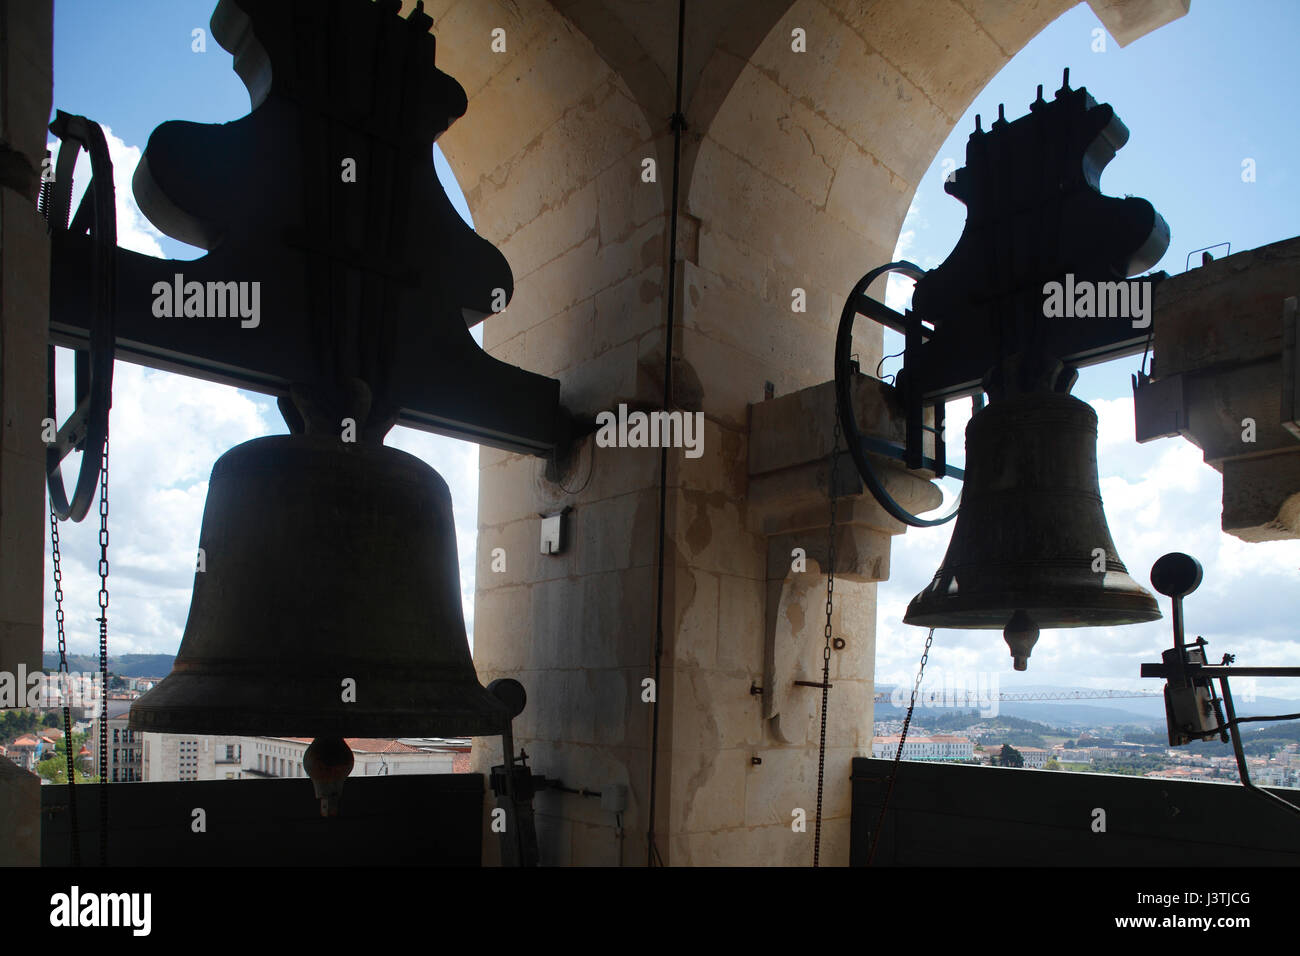 Uhren im Glockenturm der Universität von Coimbra, Coimbra, Portugal, Europa  I Glocken Im Glockenturm der Universität, Coimbra, Beira Litoral, Regio Cen  Stockfotografie - Alamy